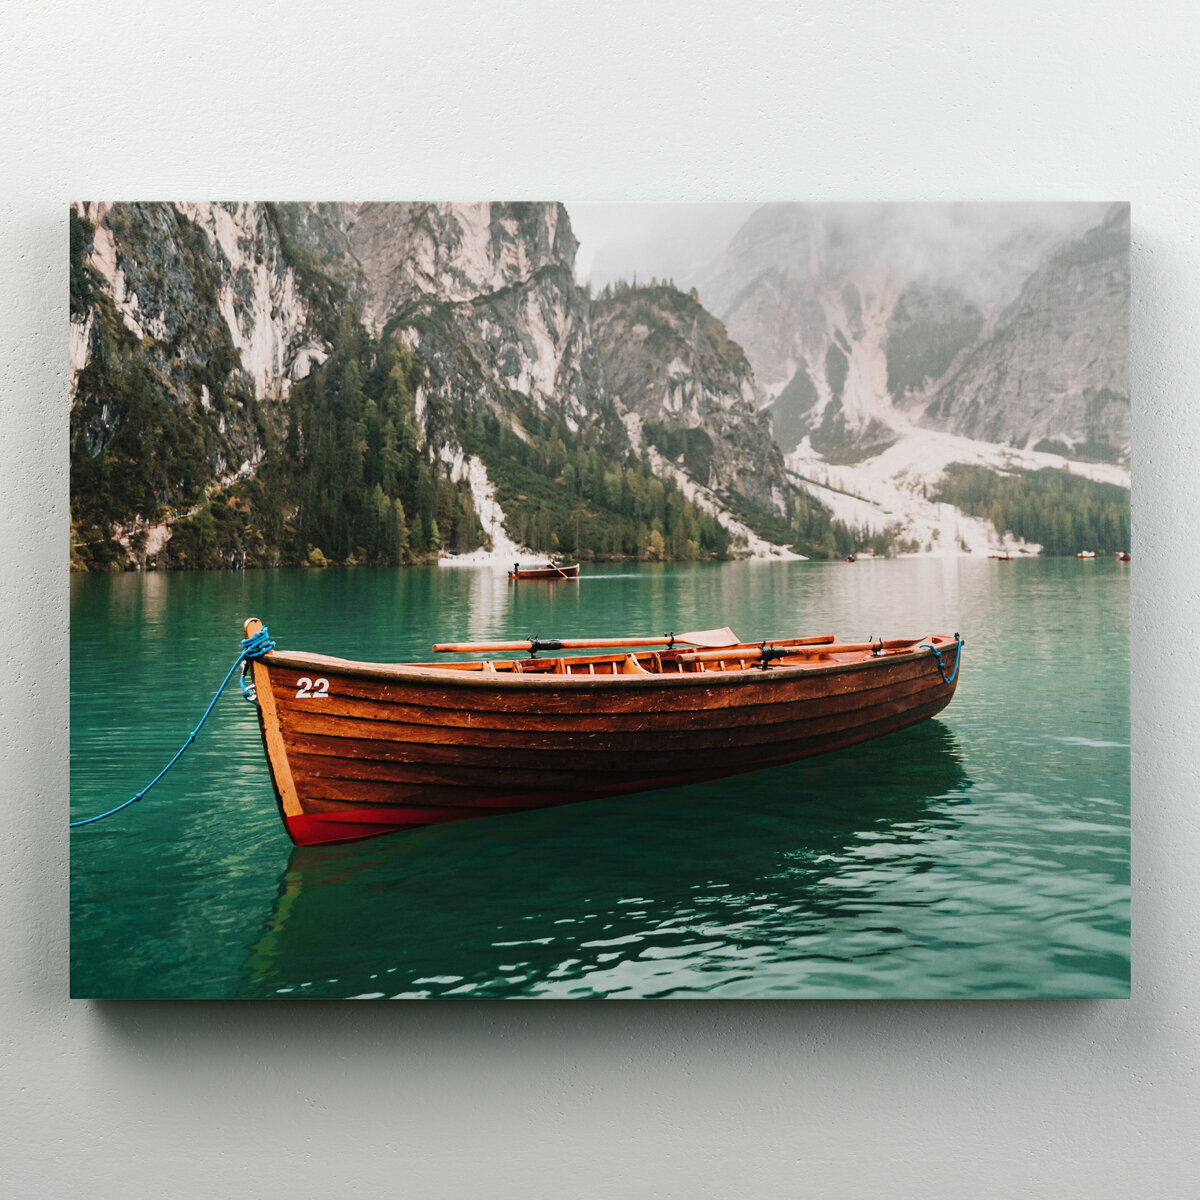 Интерьерная картина на холсте "Лодка в бирюзовом озере" в скандинавском стиле, 40x30 см